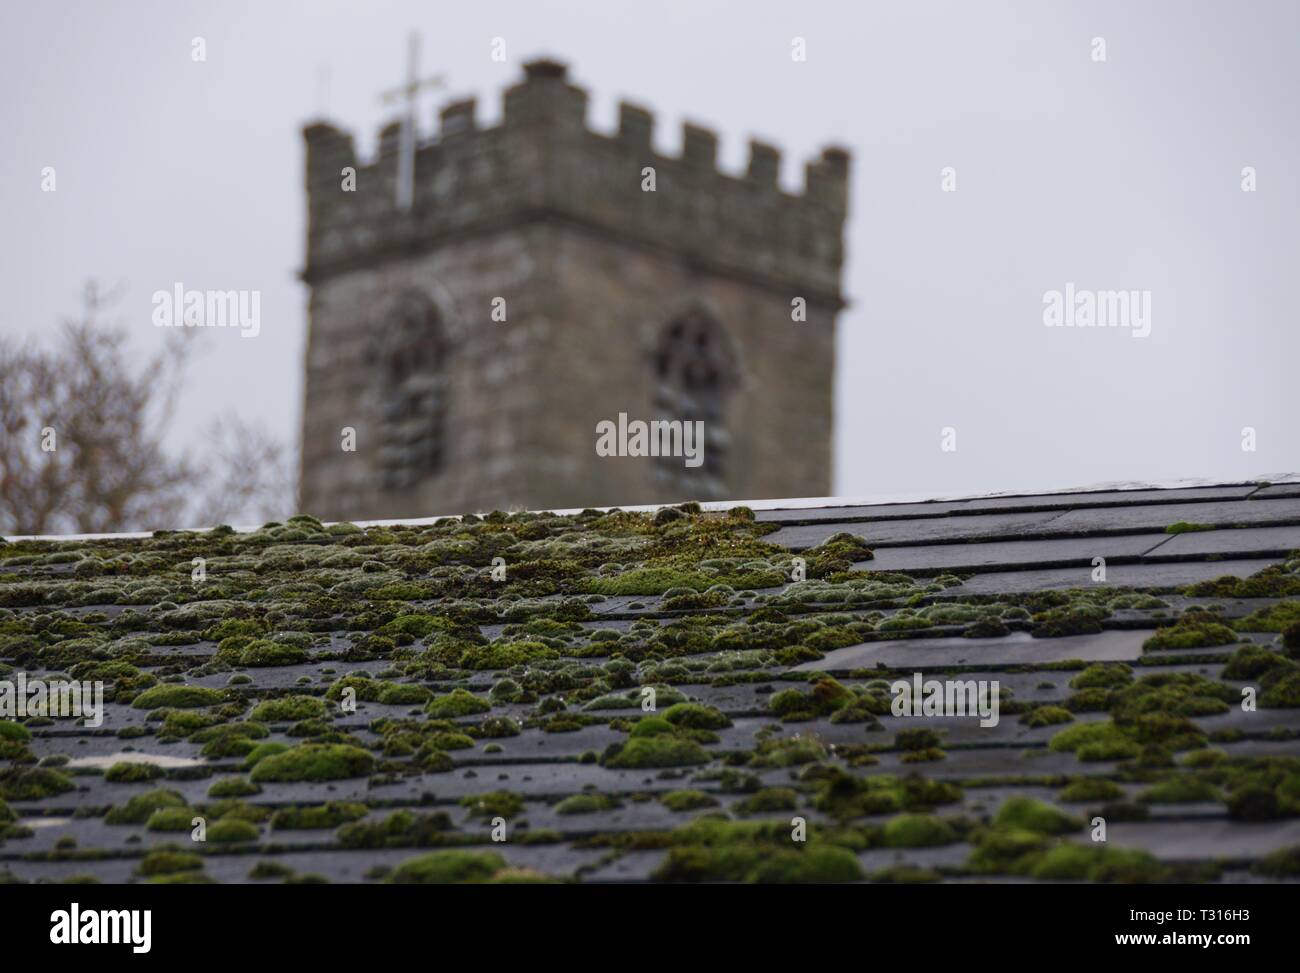 Cornish église sur un toit en ardoise avec moss Banque D'Images